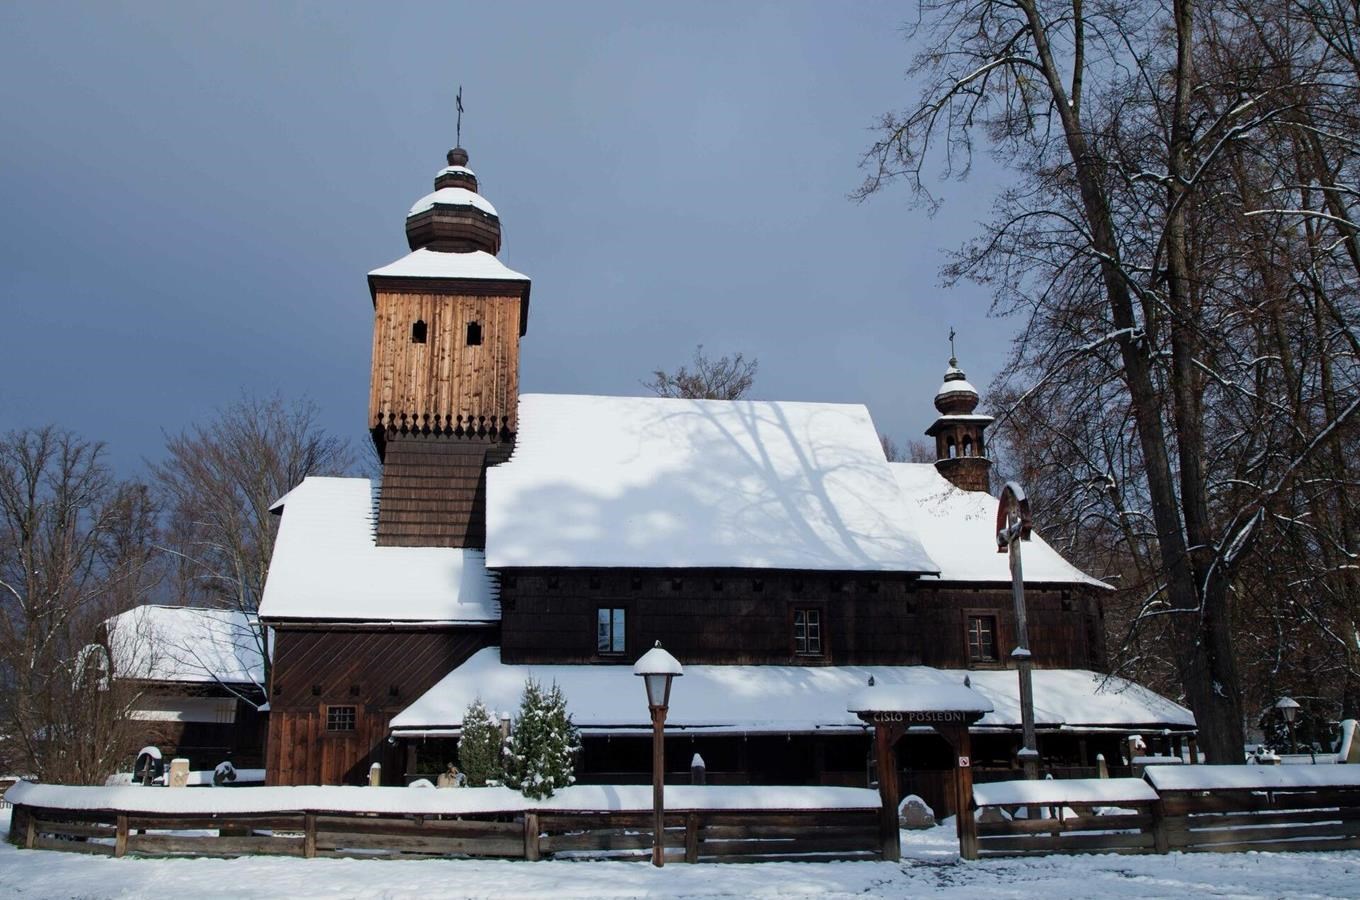 Jak vypadaly Vánoce za starých časů? To zjistíte ve Valašském muzeu v přírodě v Rožnově pod Radhoště